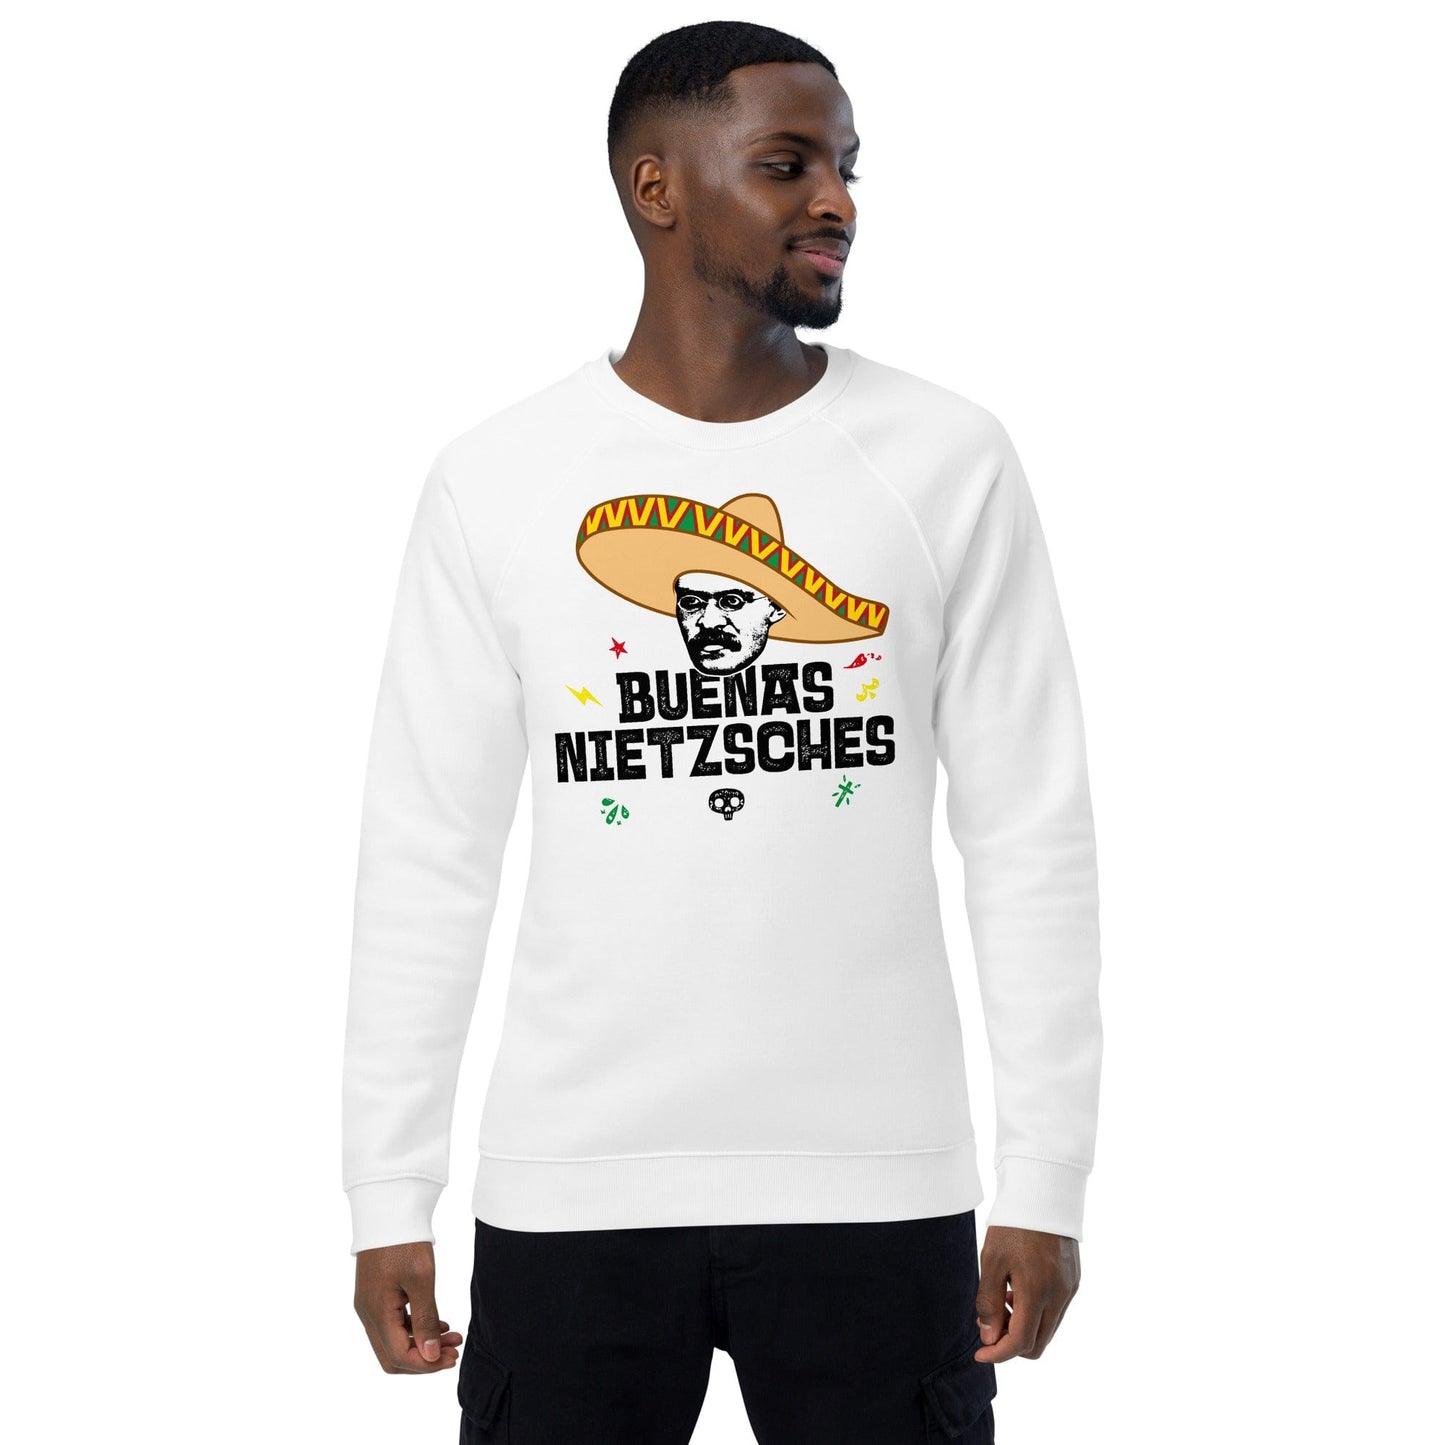 Buenas Nietzsches - Eco Sweatshirt